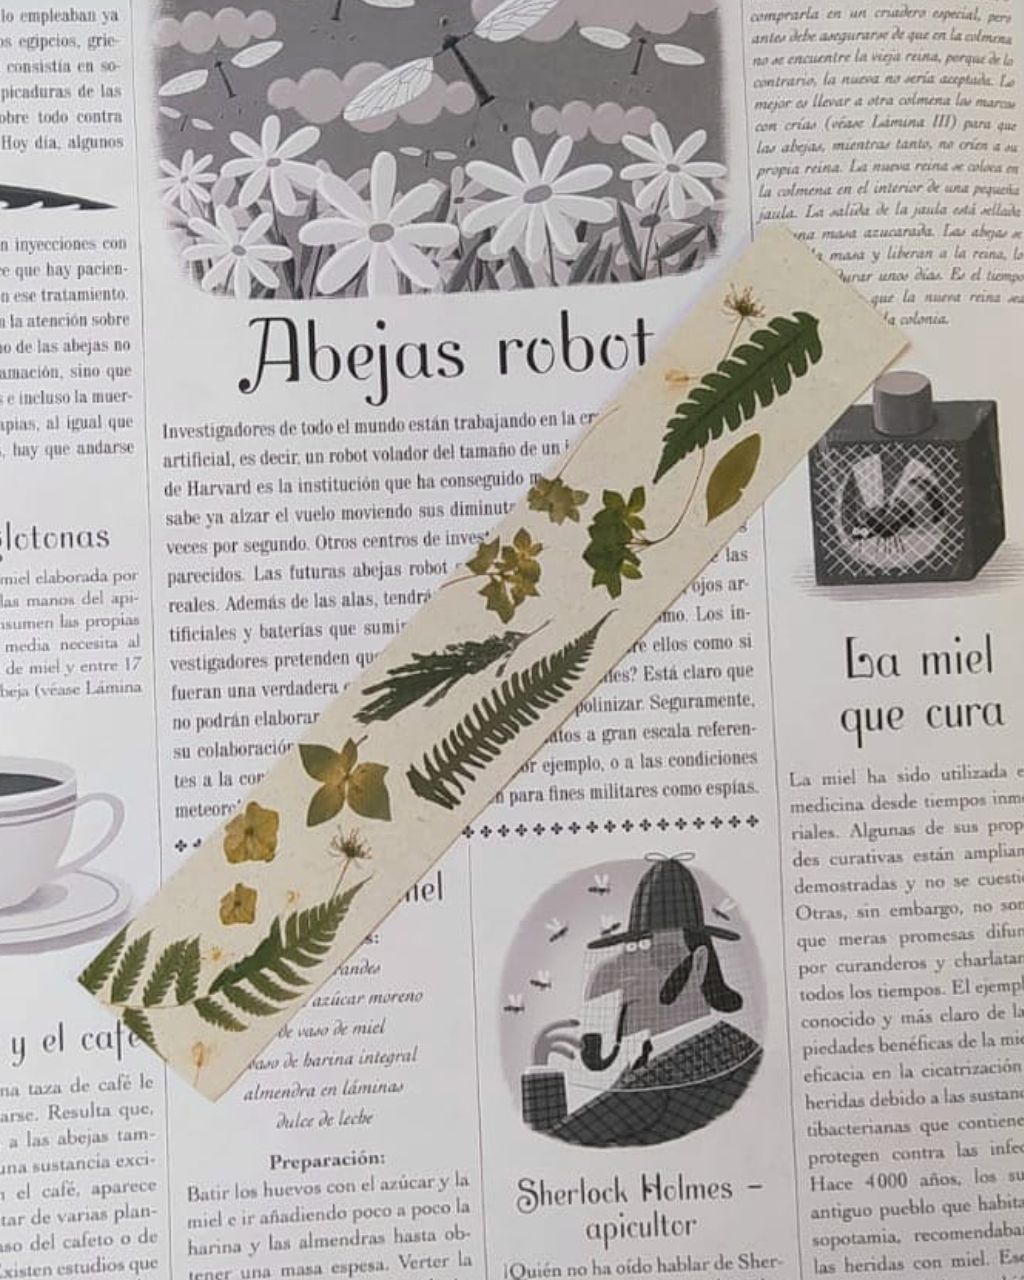 Bookmark con print de flores colombianas en tonos verdes sobre papel color crudo.